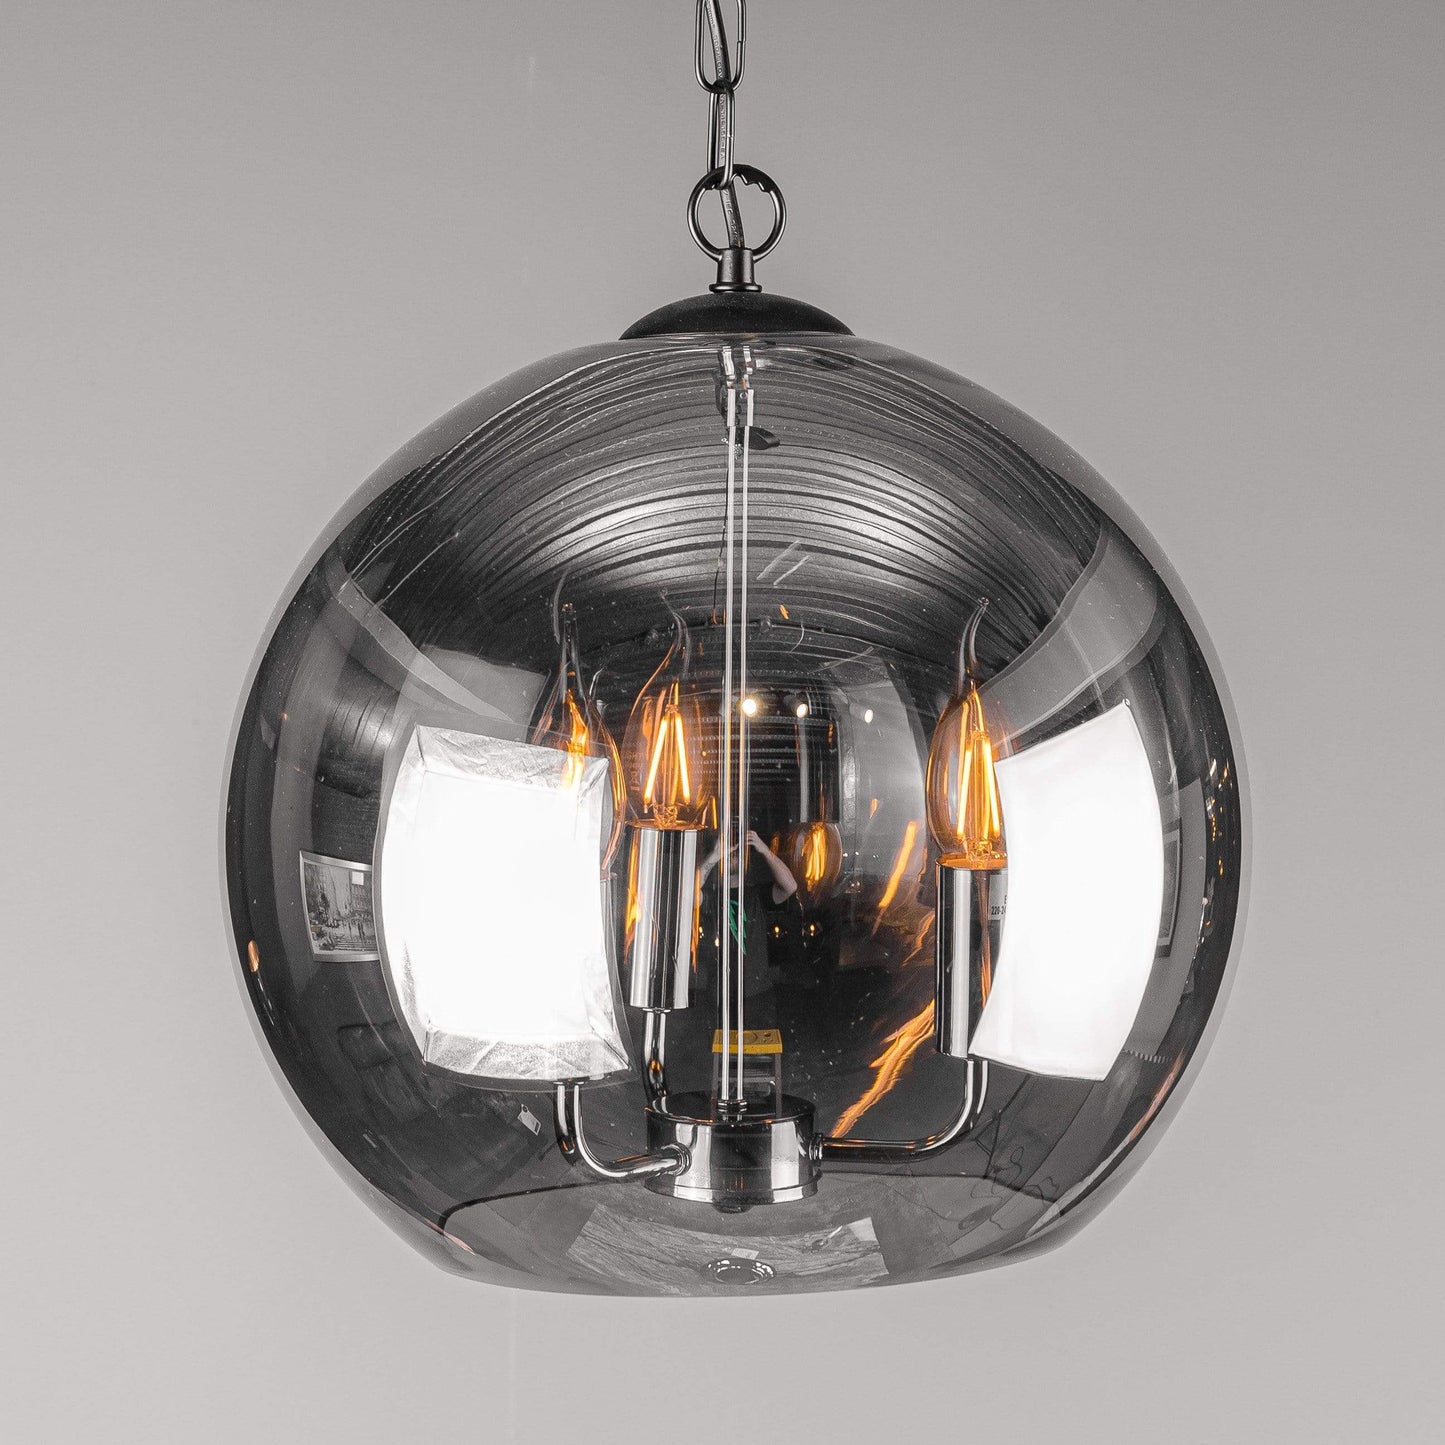 Lights  -  3 Light Smoked Glass Black And Chrome Ball Pendant  -  50155558